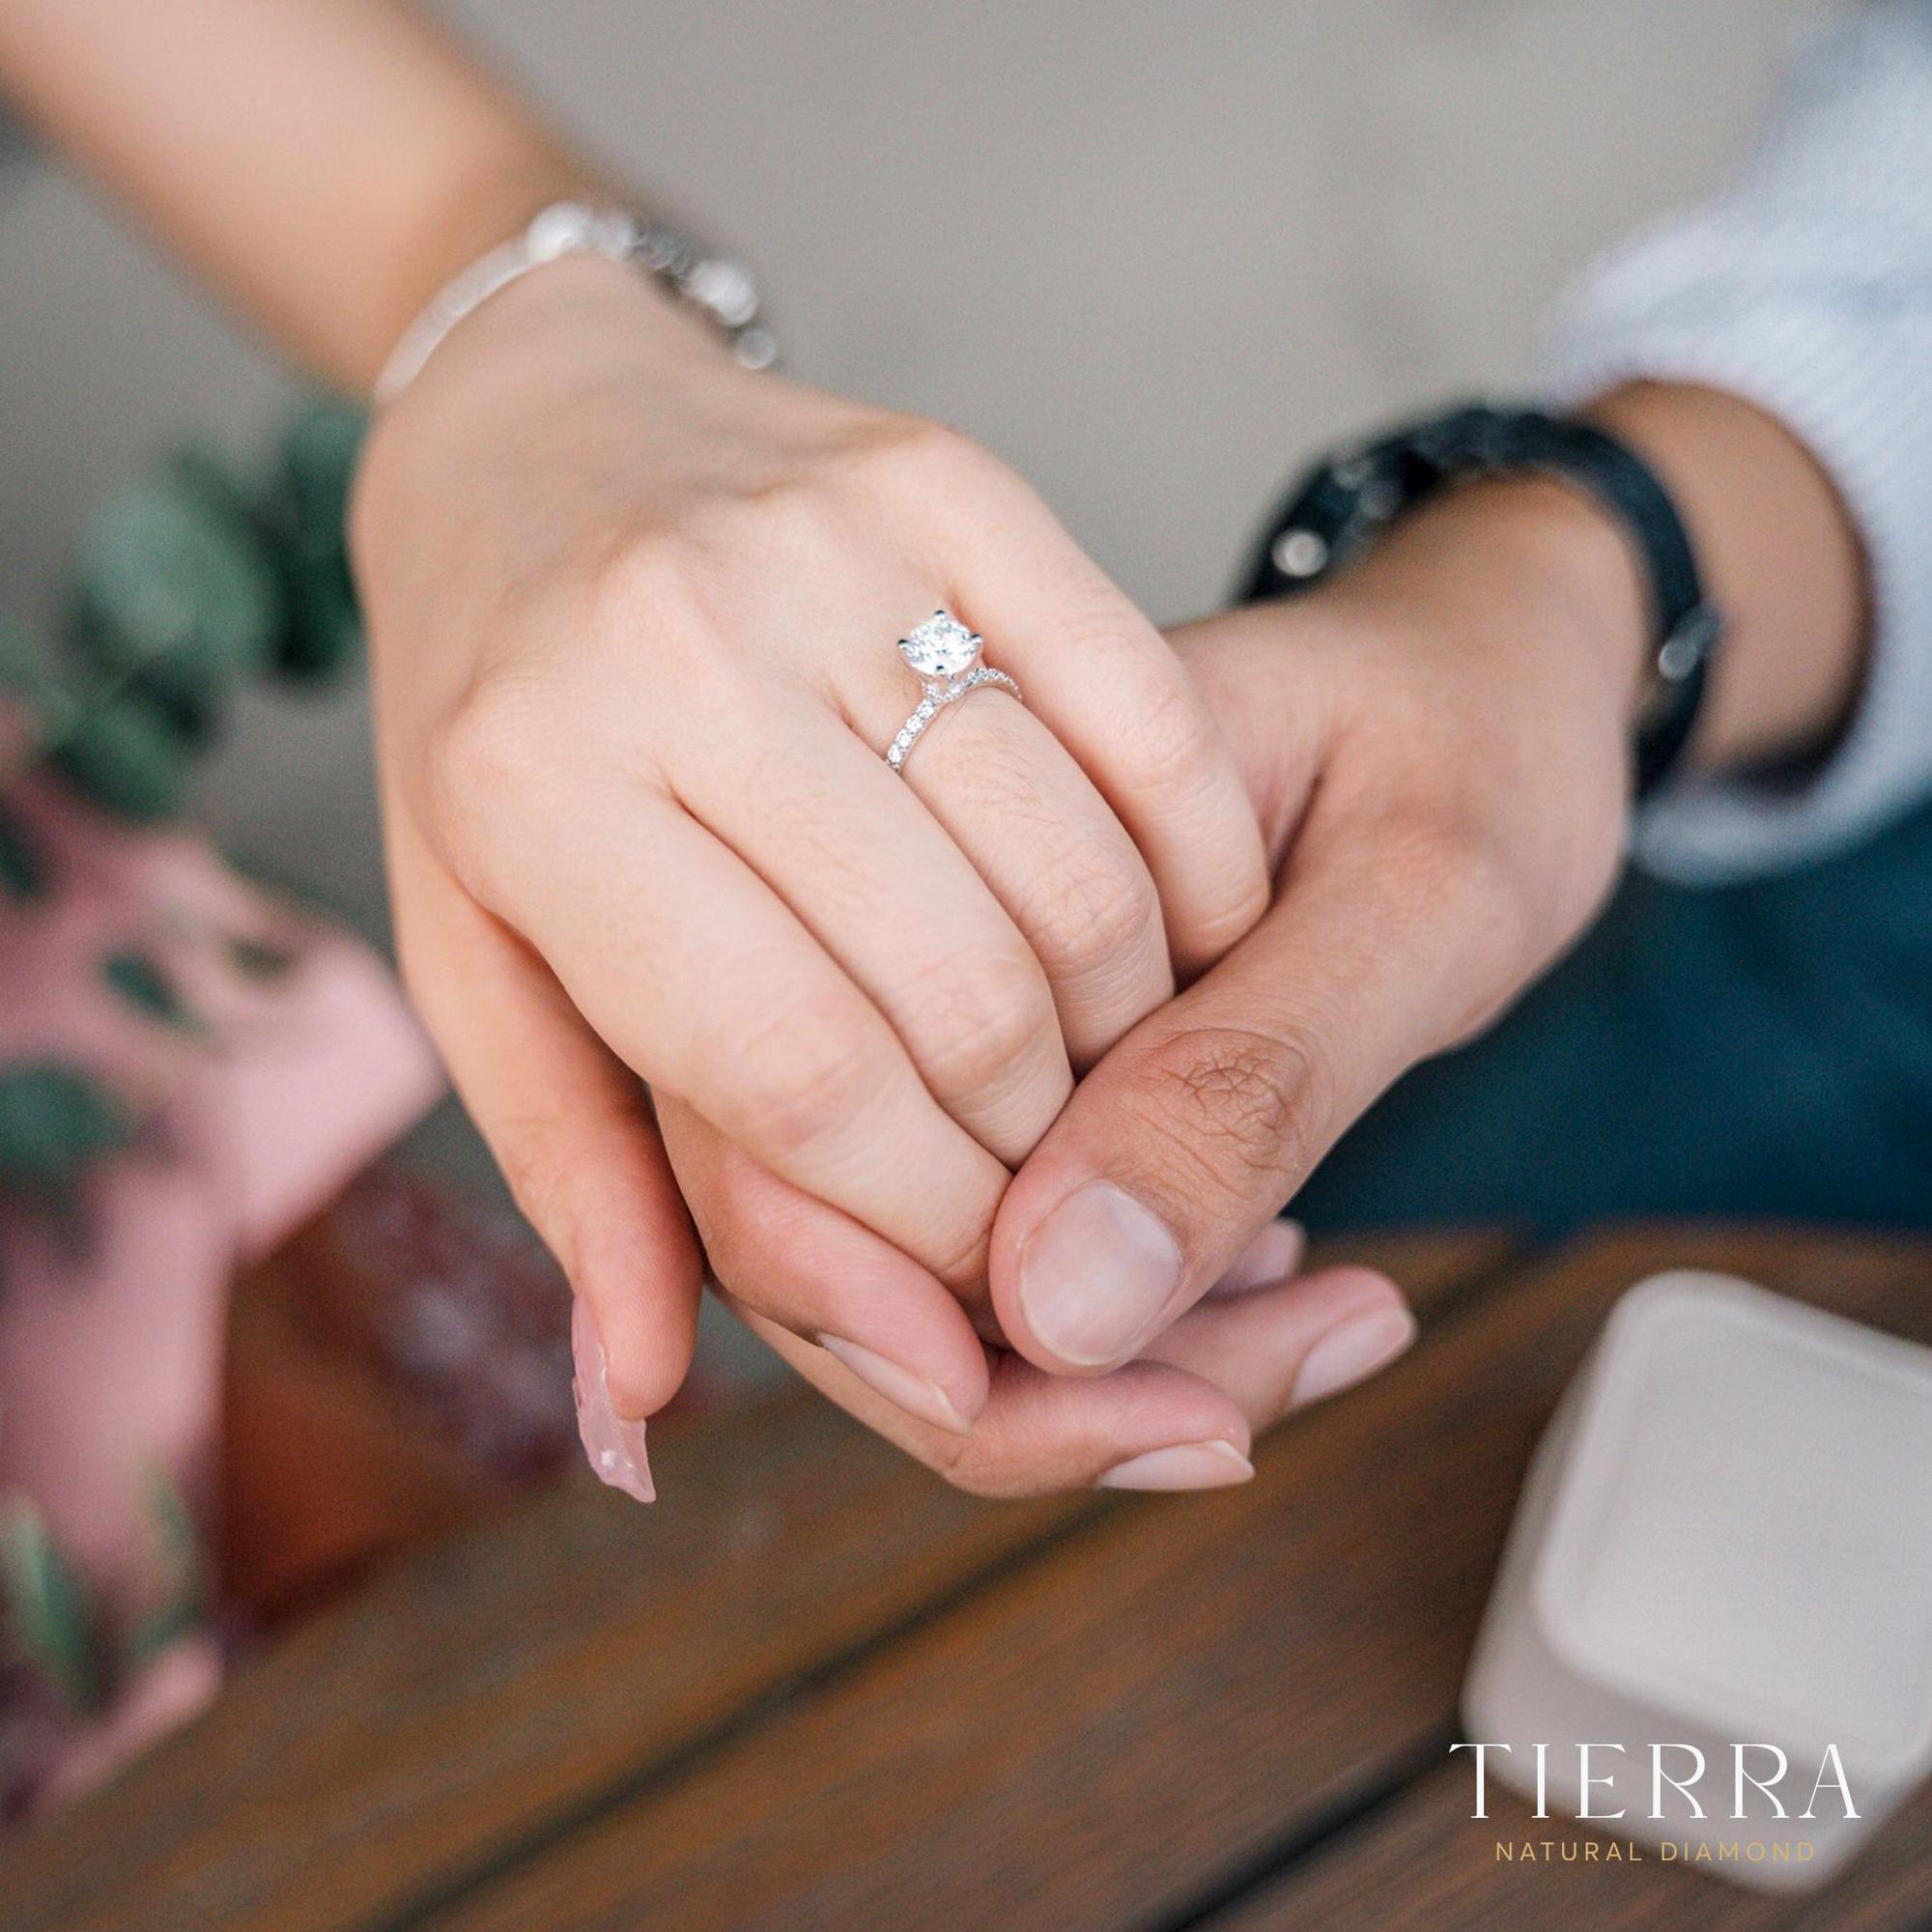 Con trai, con gái đeo nhẫn cưới tay nào là đúng truyền thống?